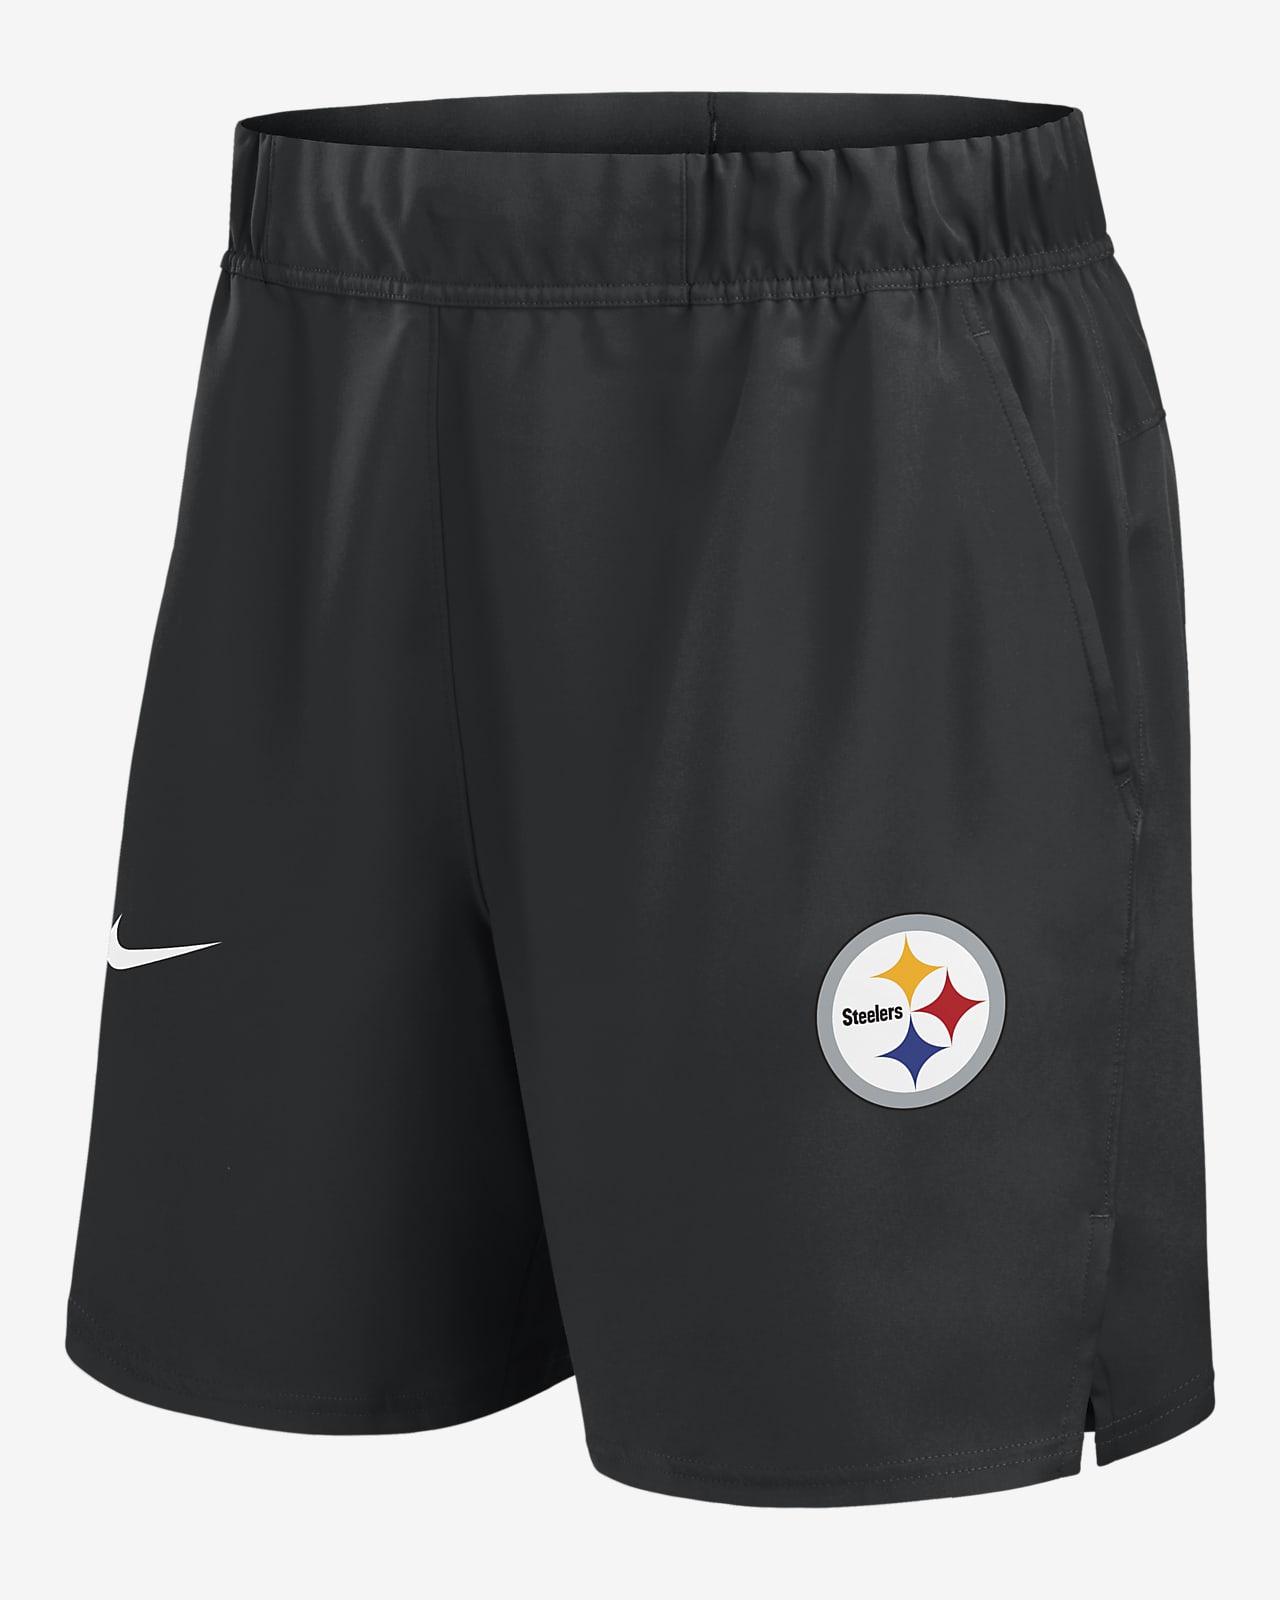 Shorts Nike Dri-FIT de la NFL para hombre Pittsburgh Steelers Blitz Victory